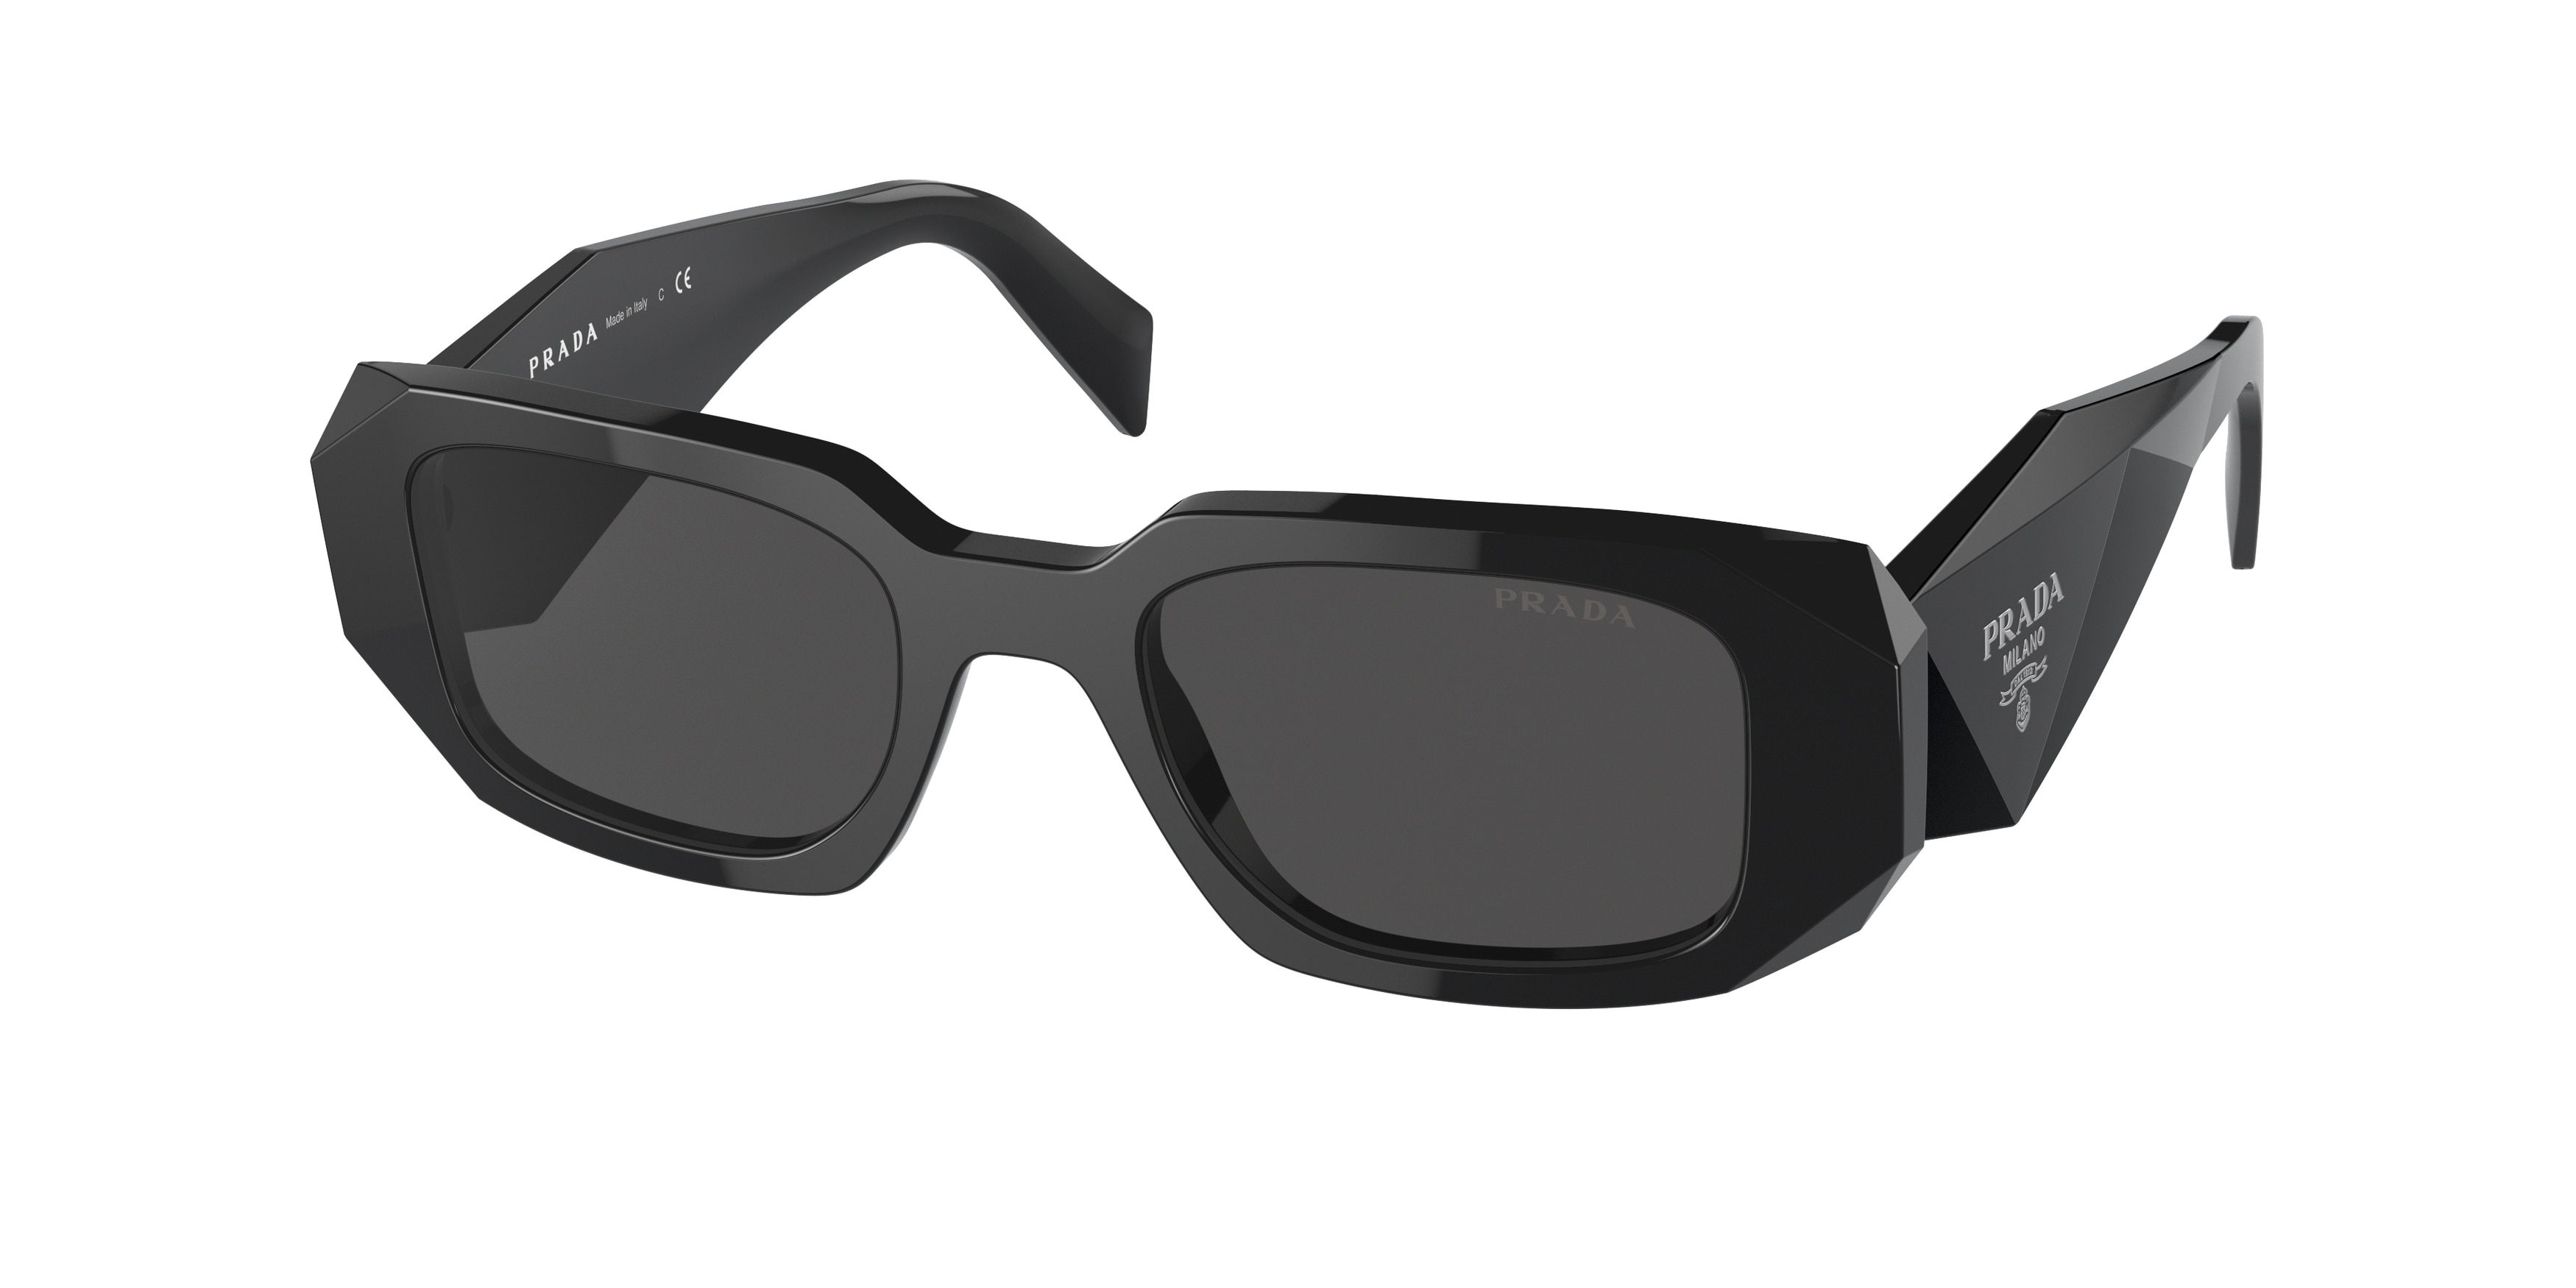 First Copy Sunglasses In Pune | Replica Sunglasses Online